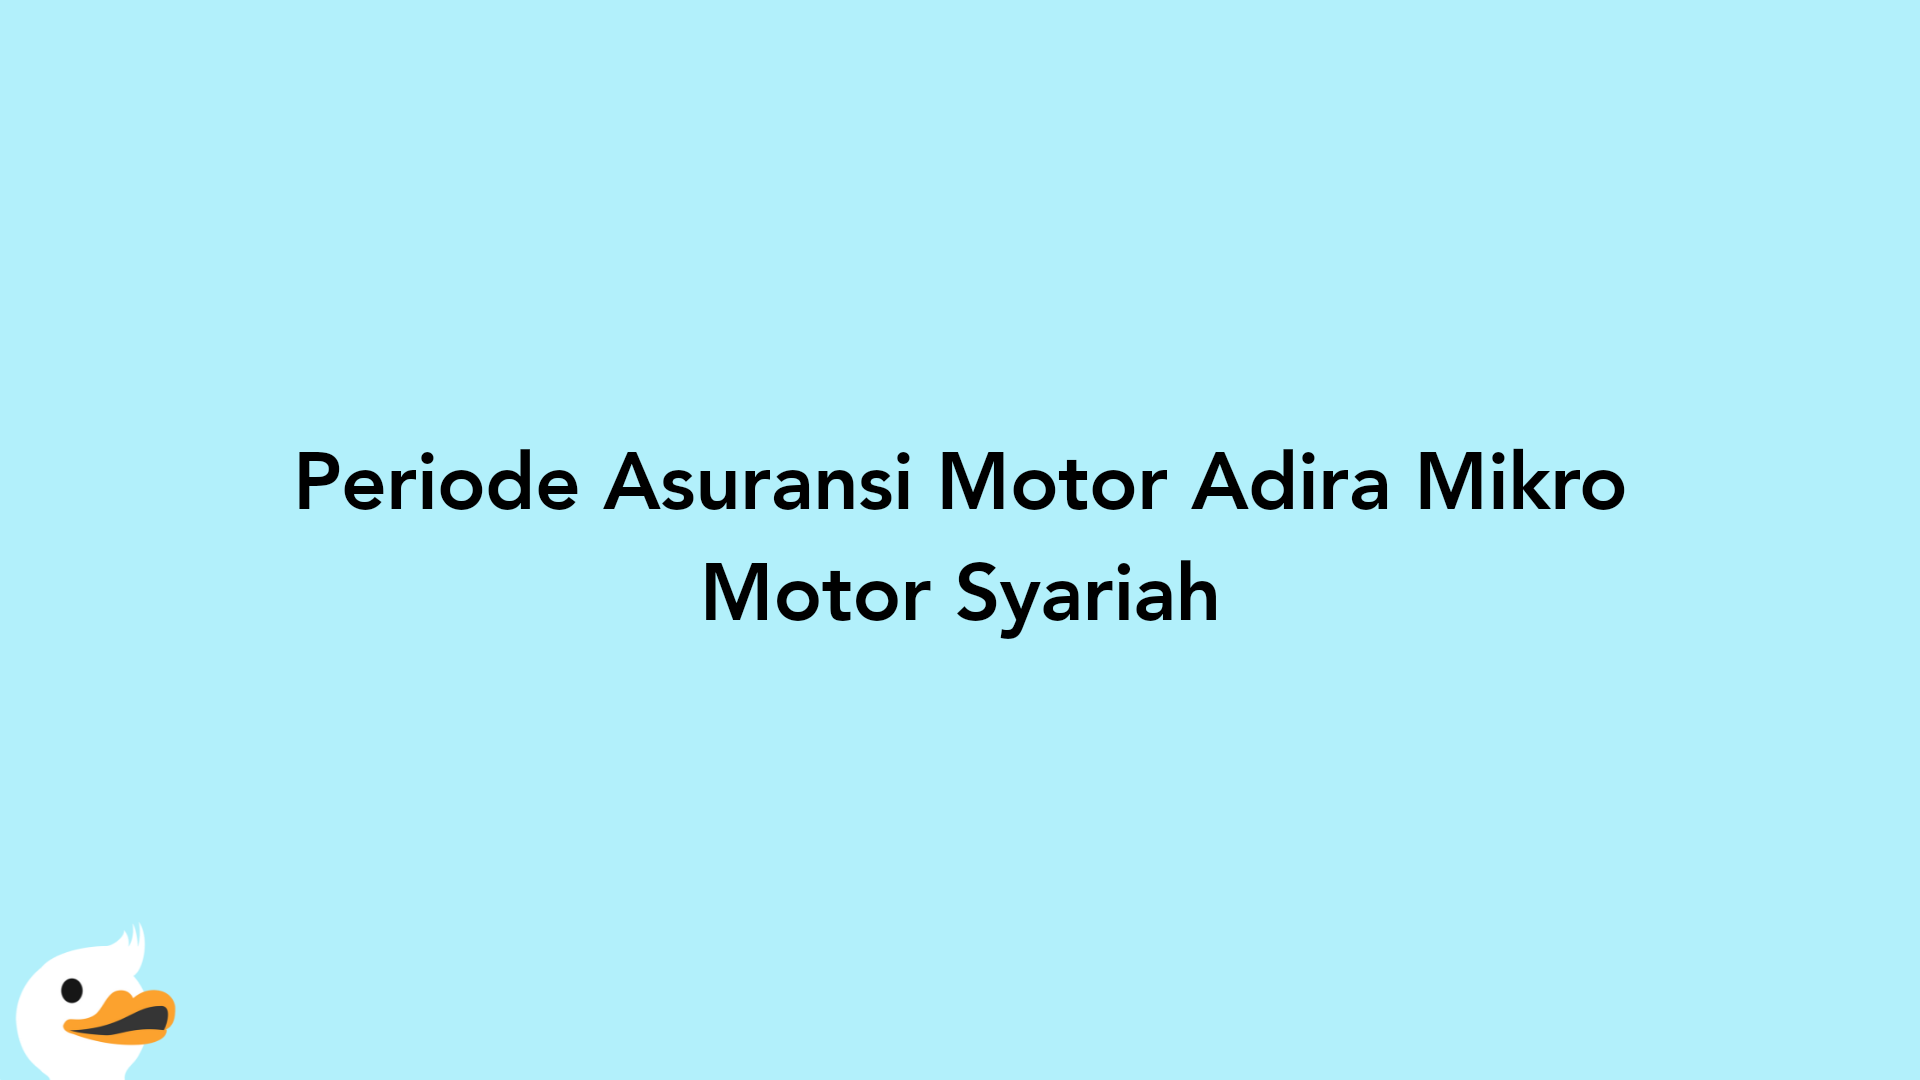 Periode Asuransi Motor Adira Mikro Motor Syariah